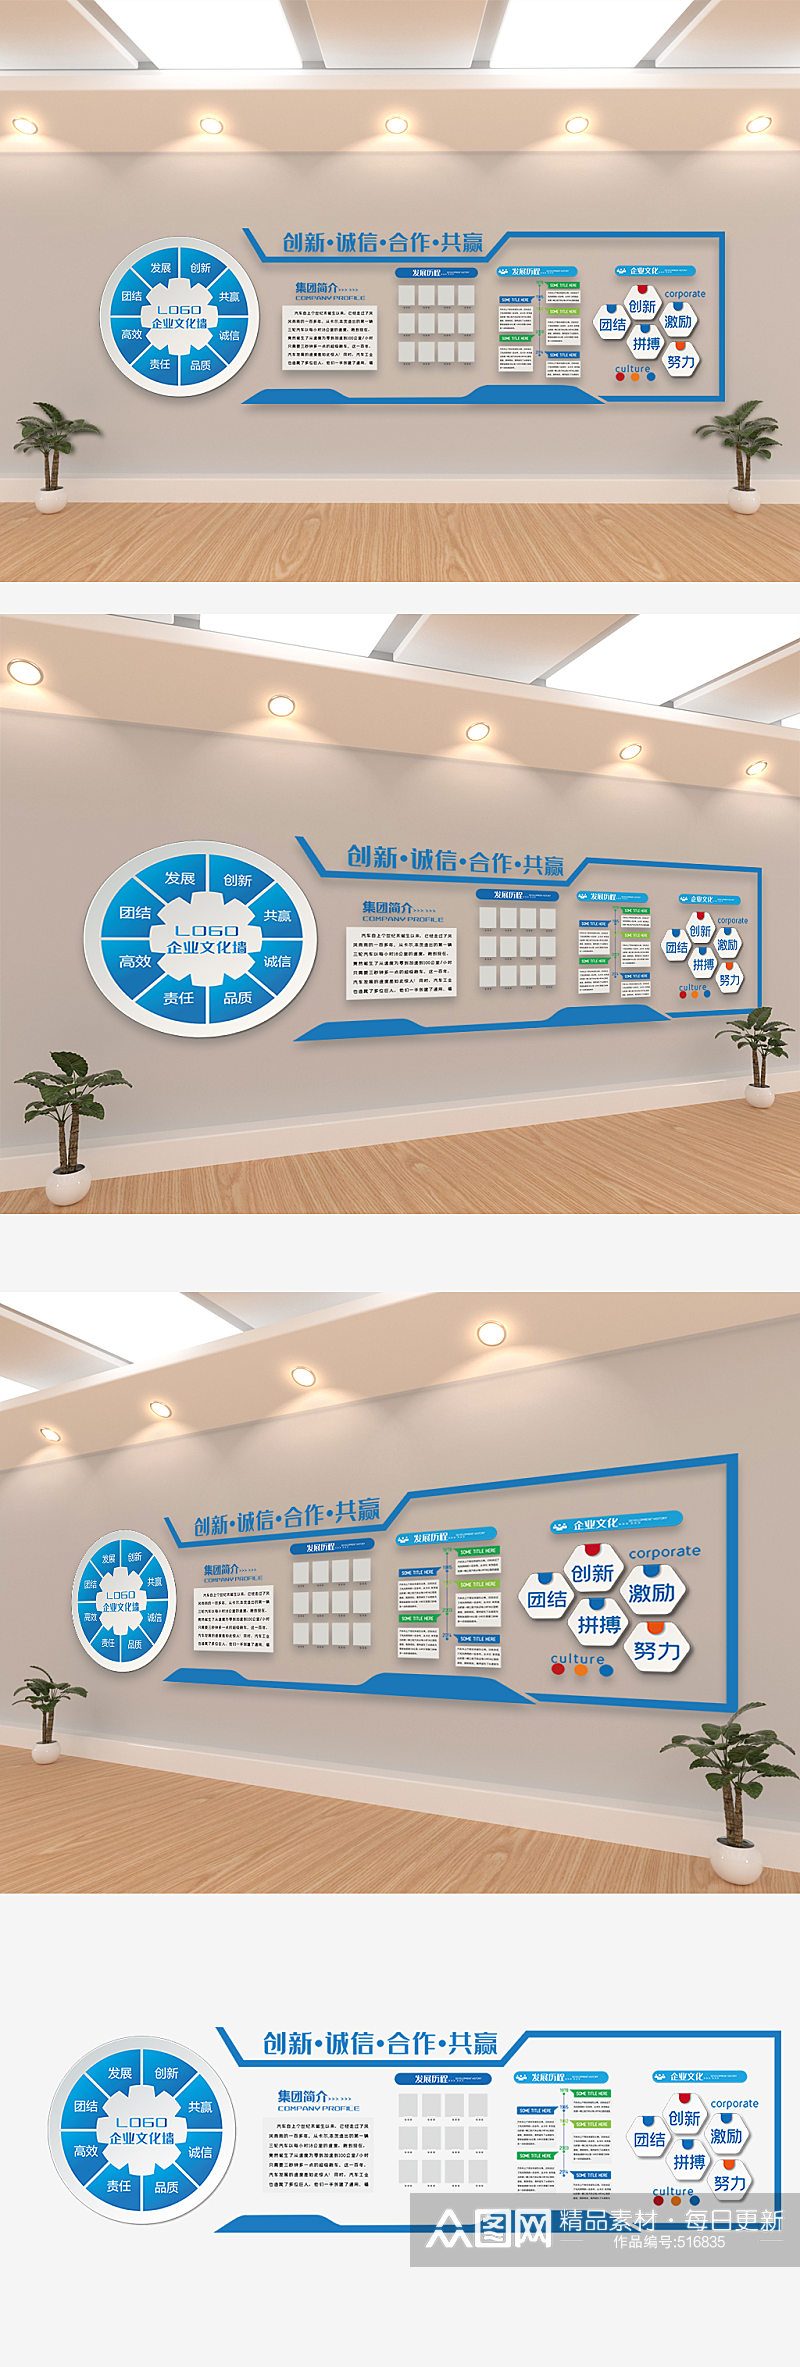 蓝色科技企业宣传办公室文化墙效果设计图素材